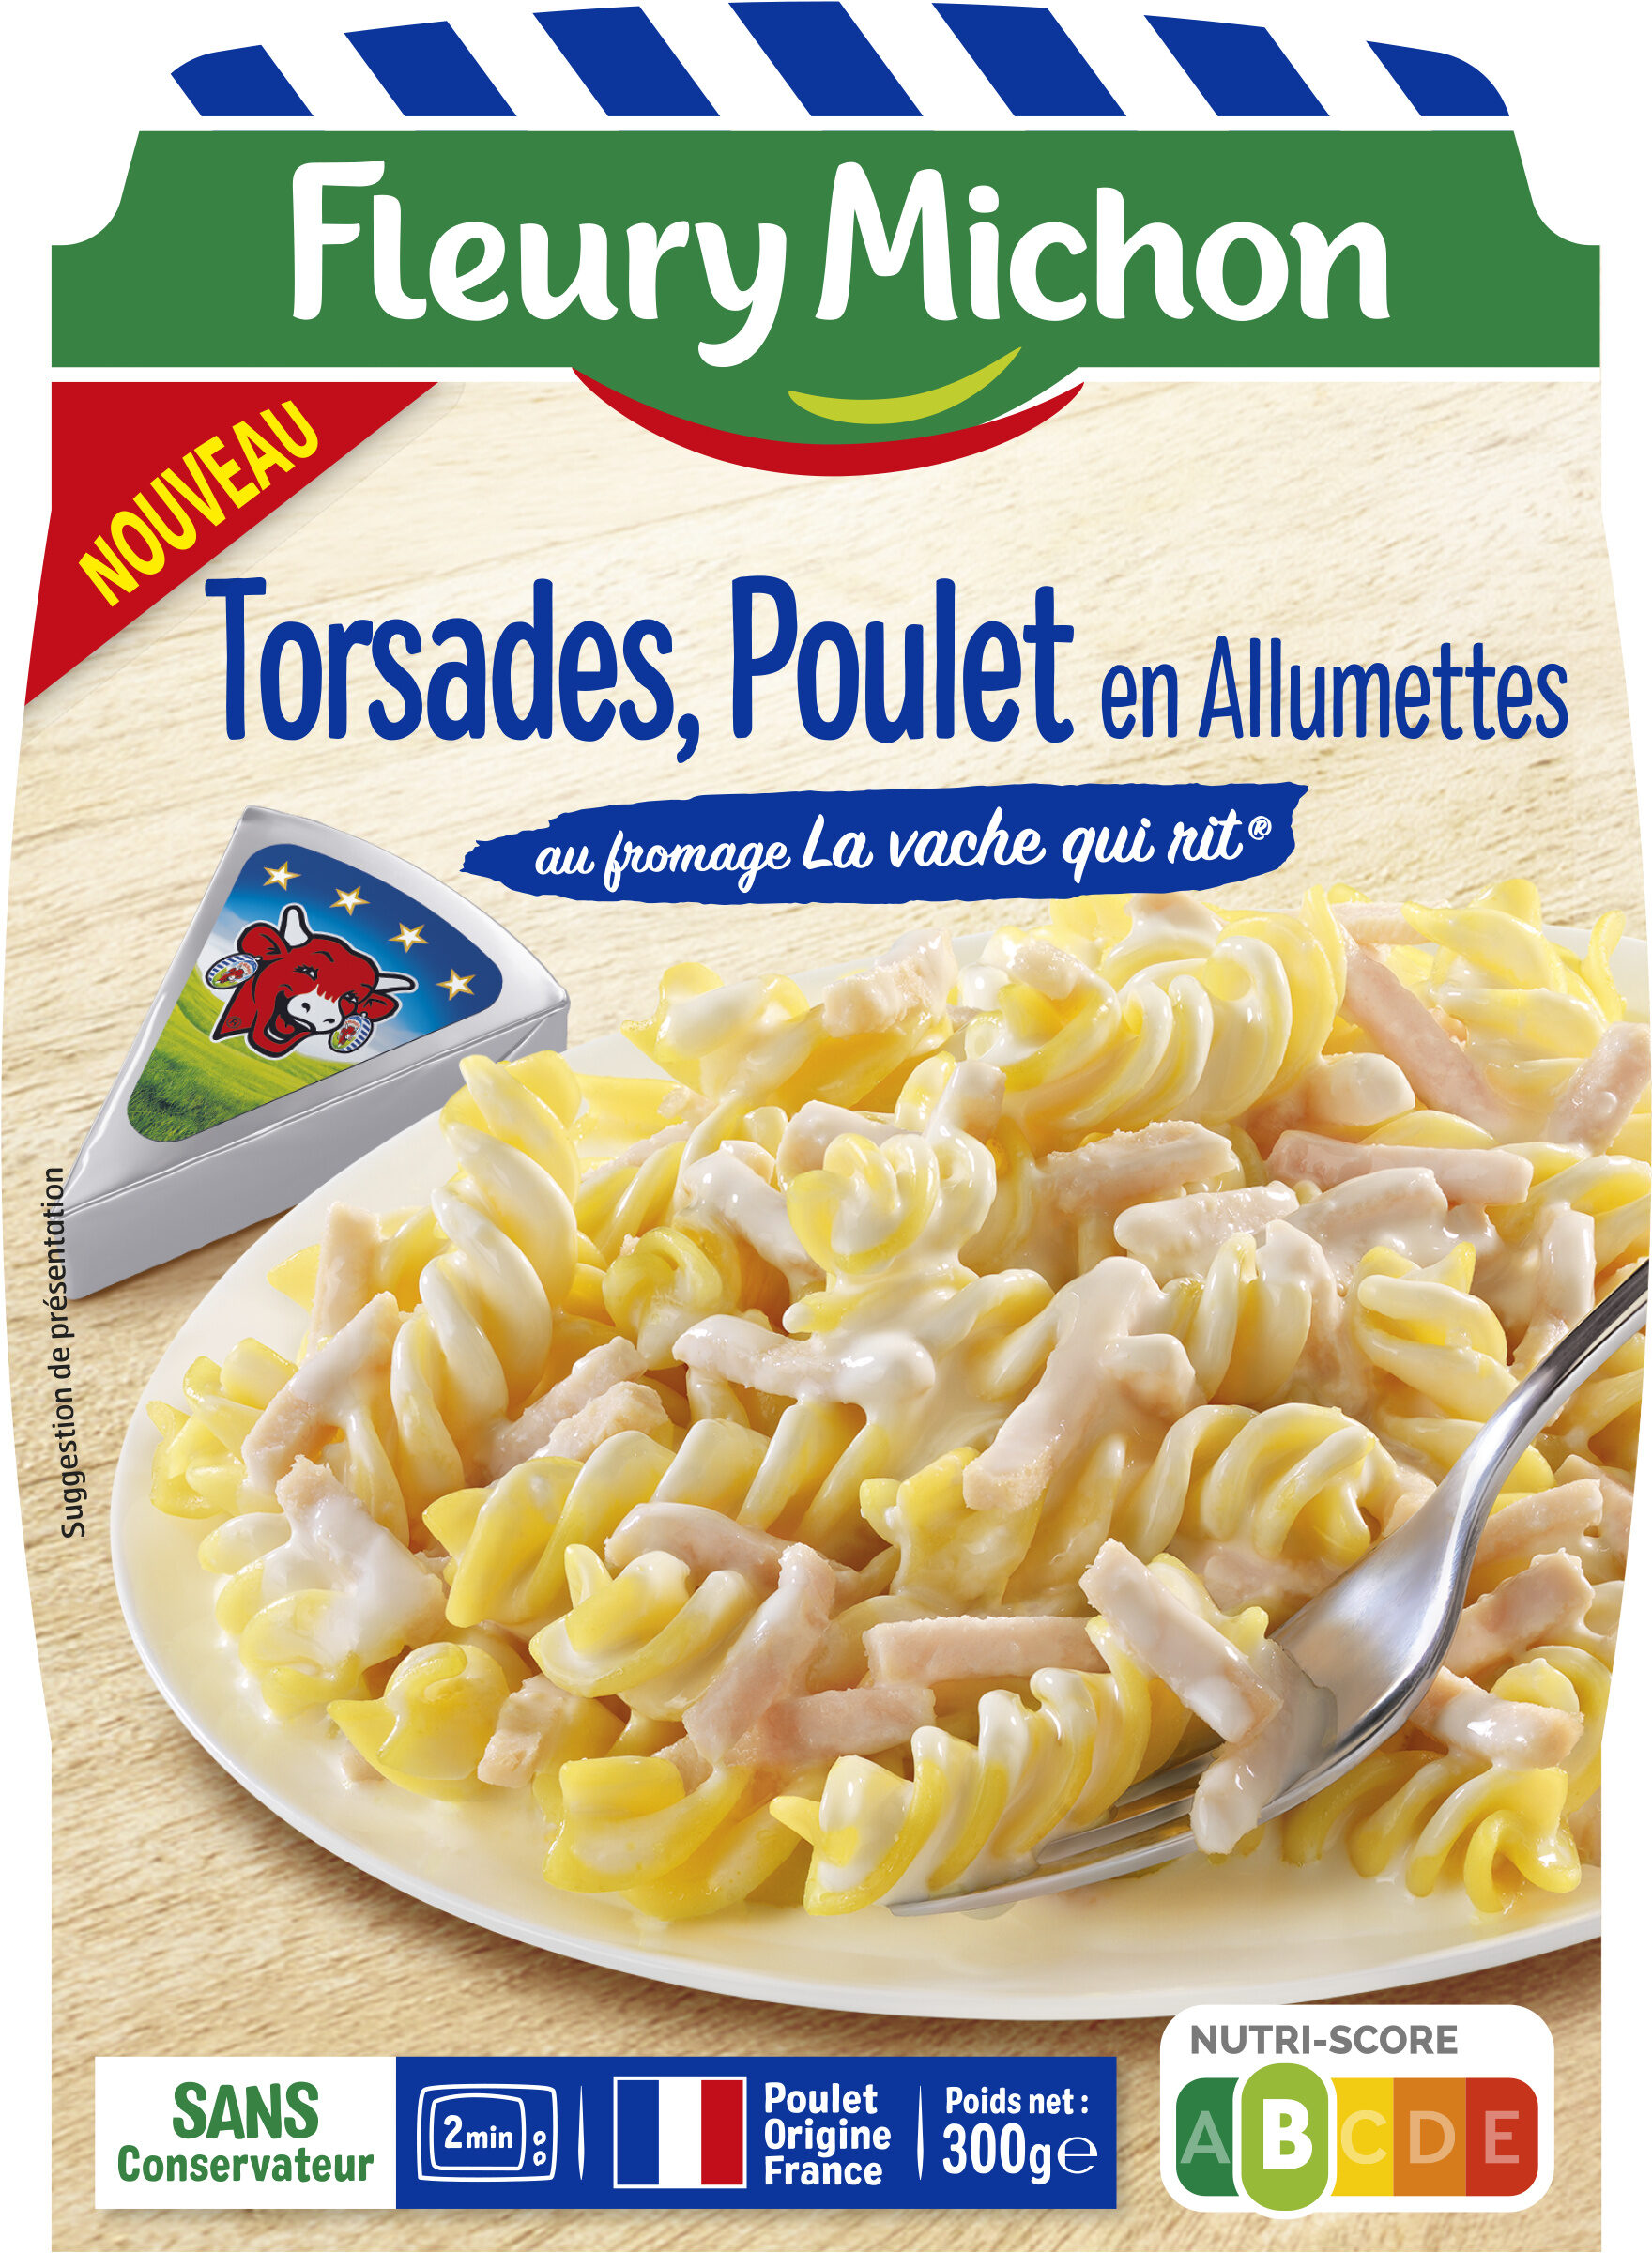 Torsades Poulet en Allumettes au fromage La vache qui rit® - Product - fr